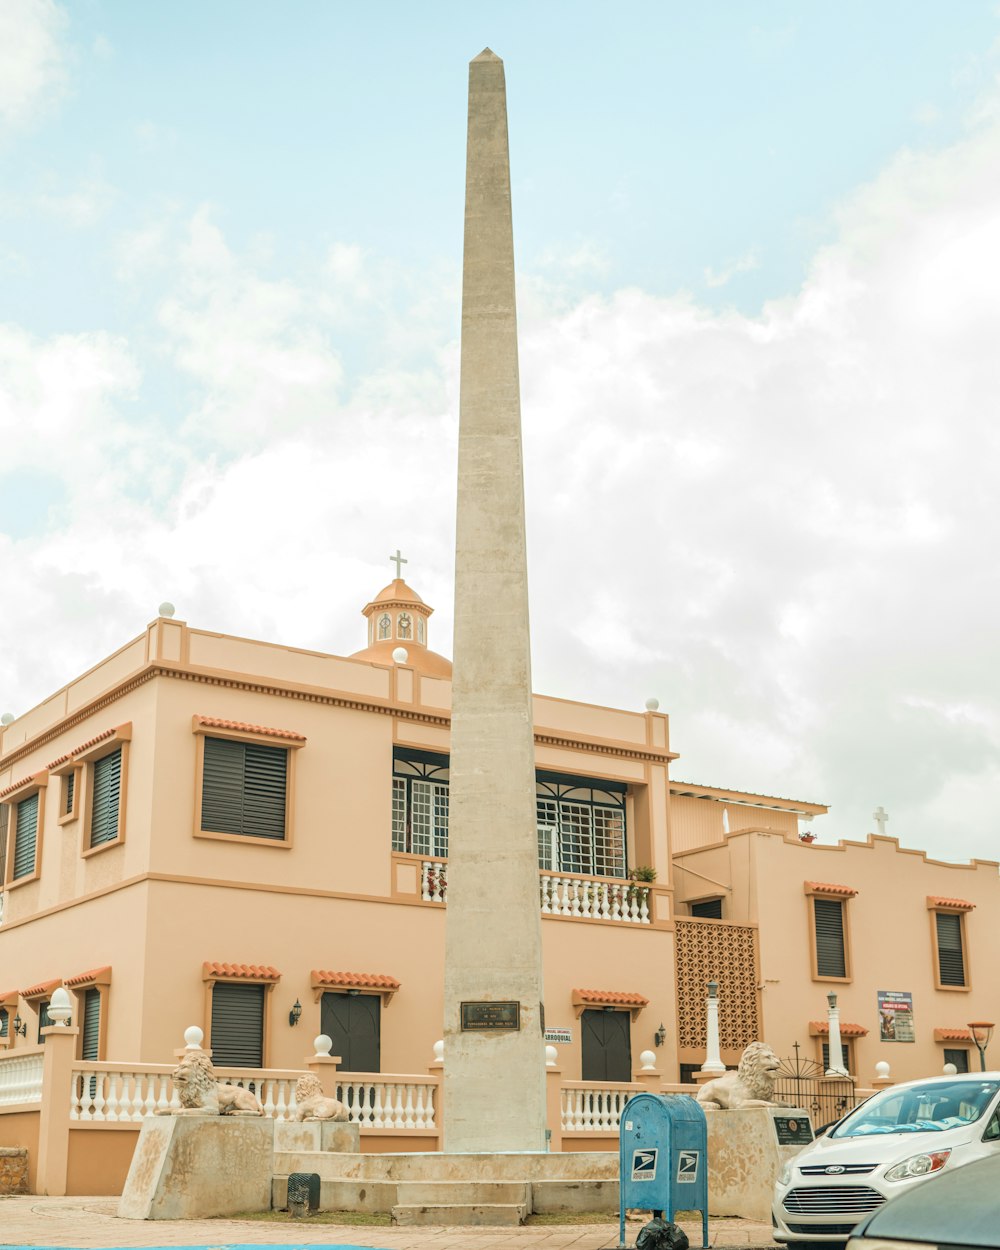 Un alto obelisco frente a un edificio